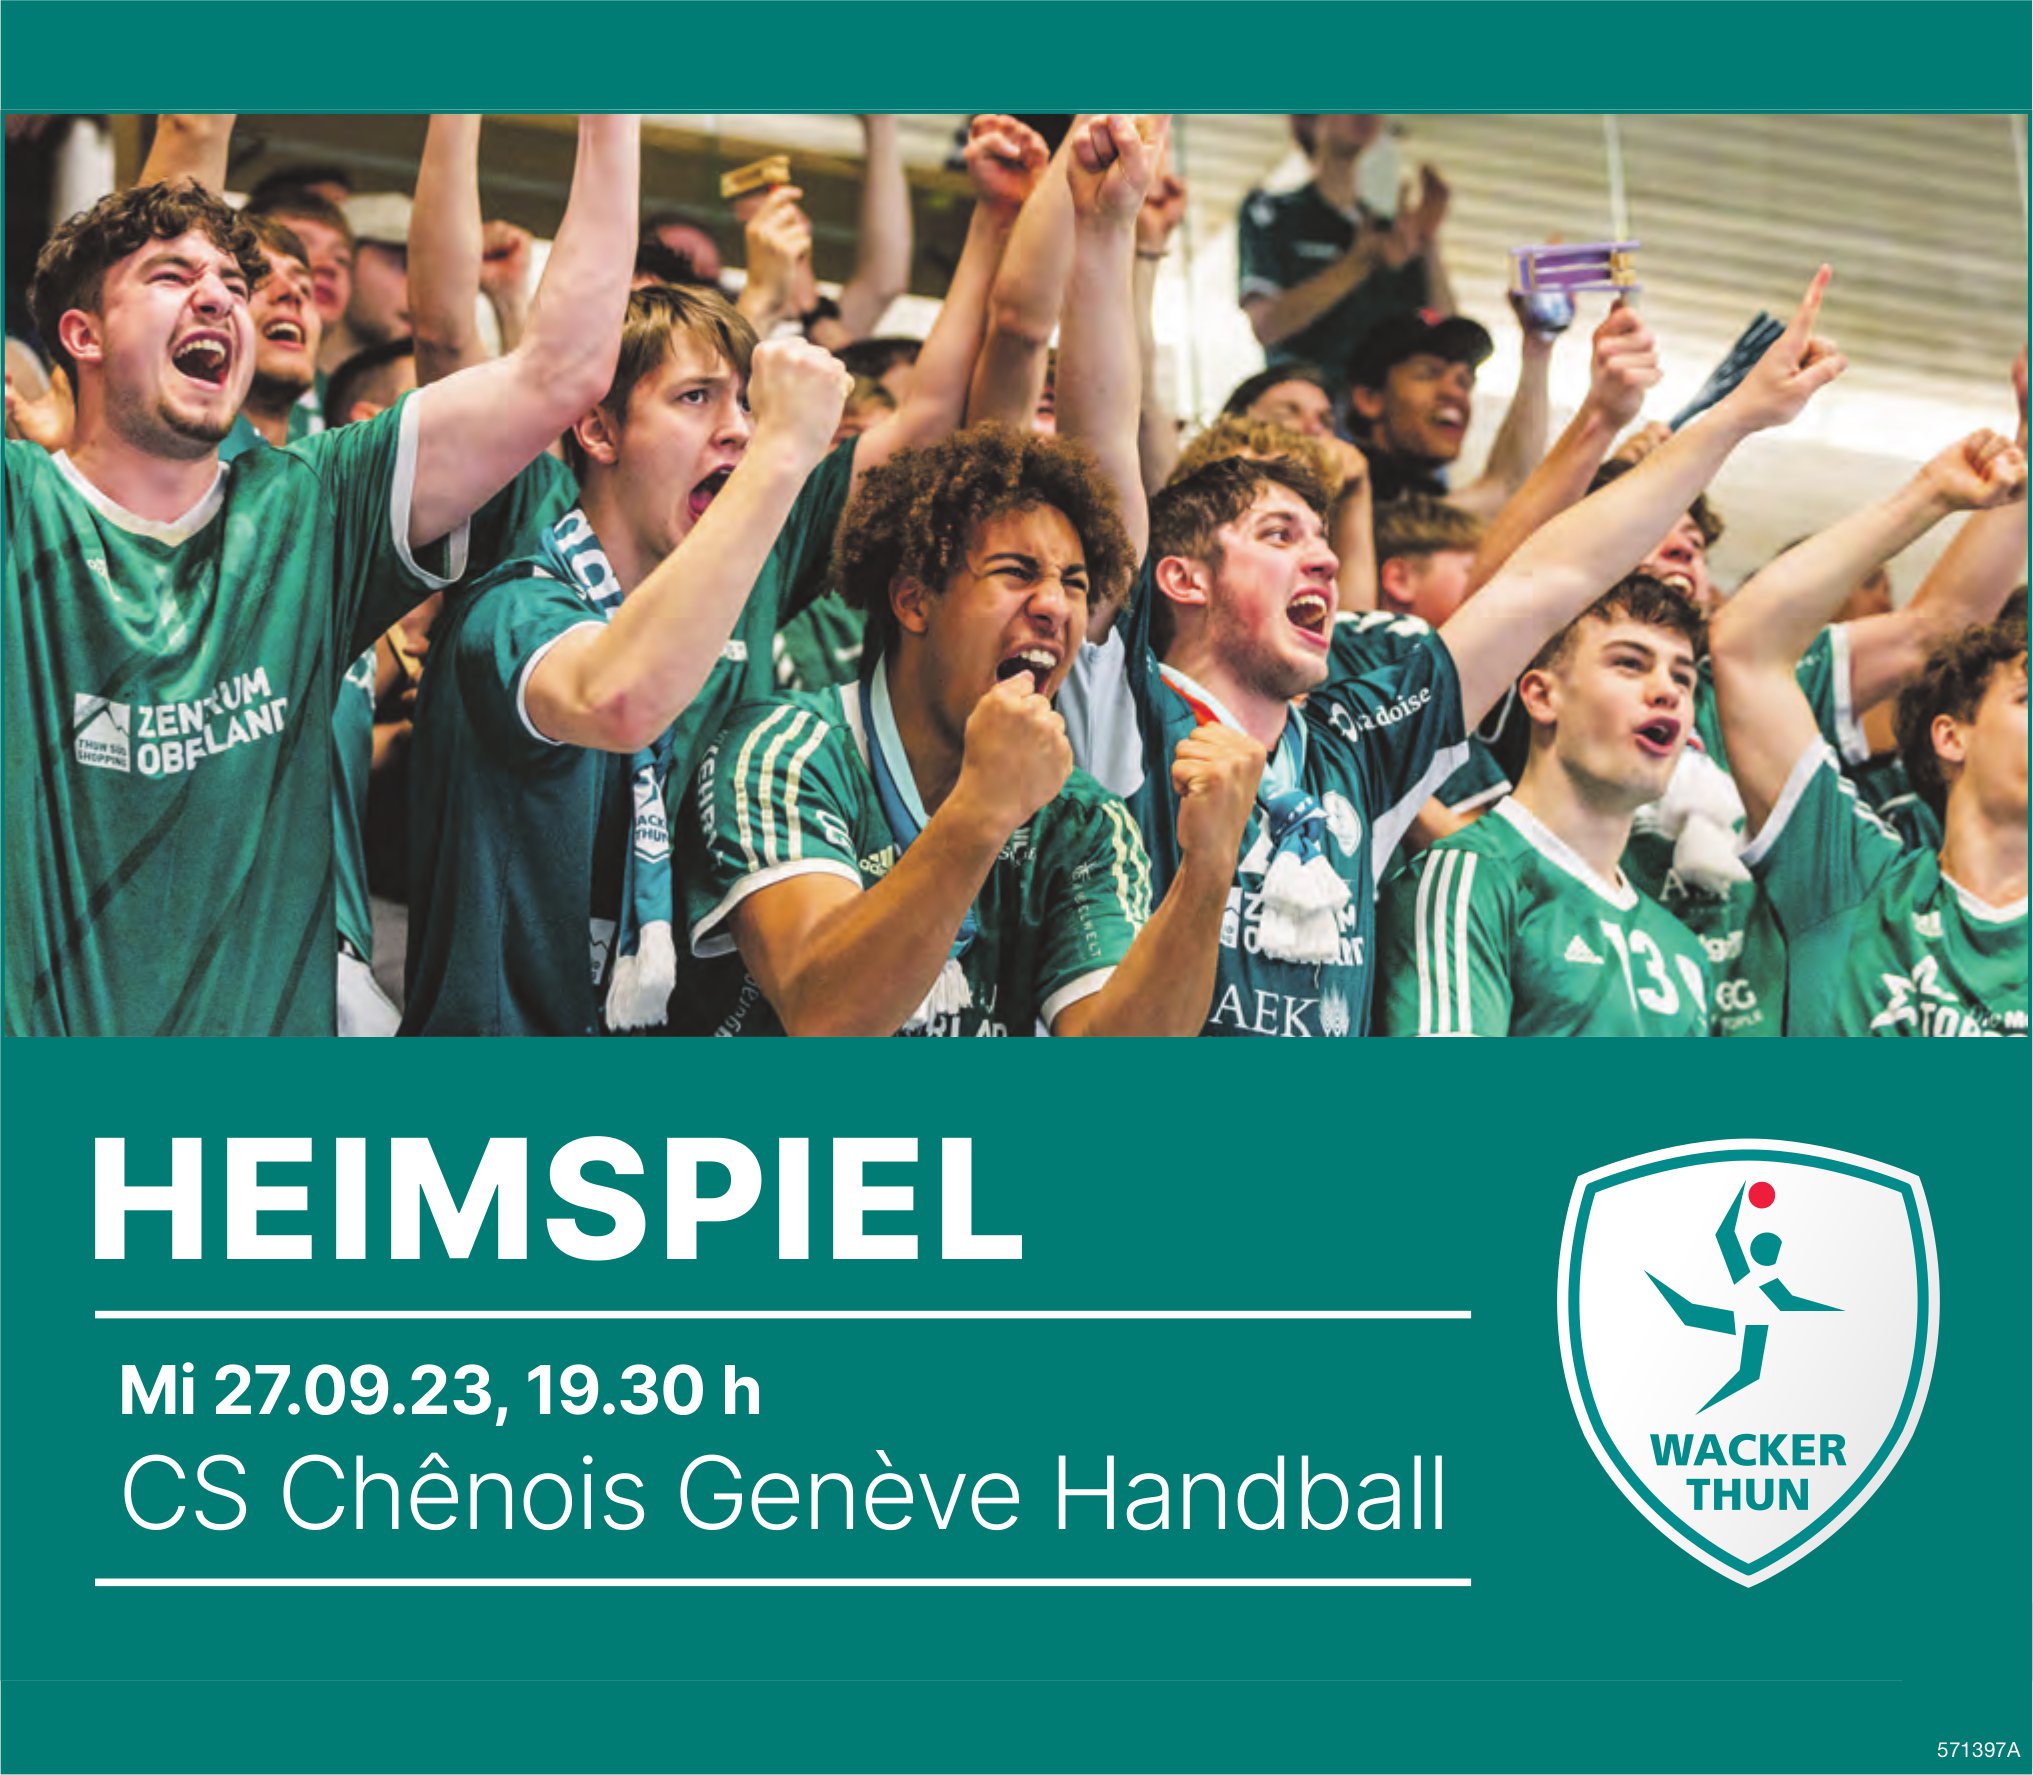 Heimspiel Wacker Thun vs CS Chênois Genève Handball, 27. September, Genève